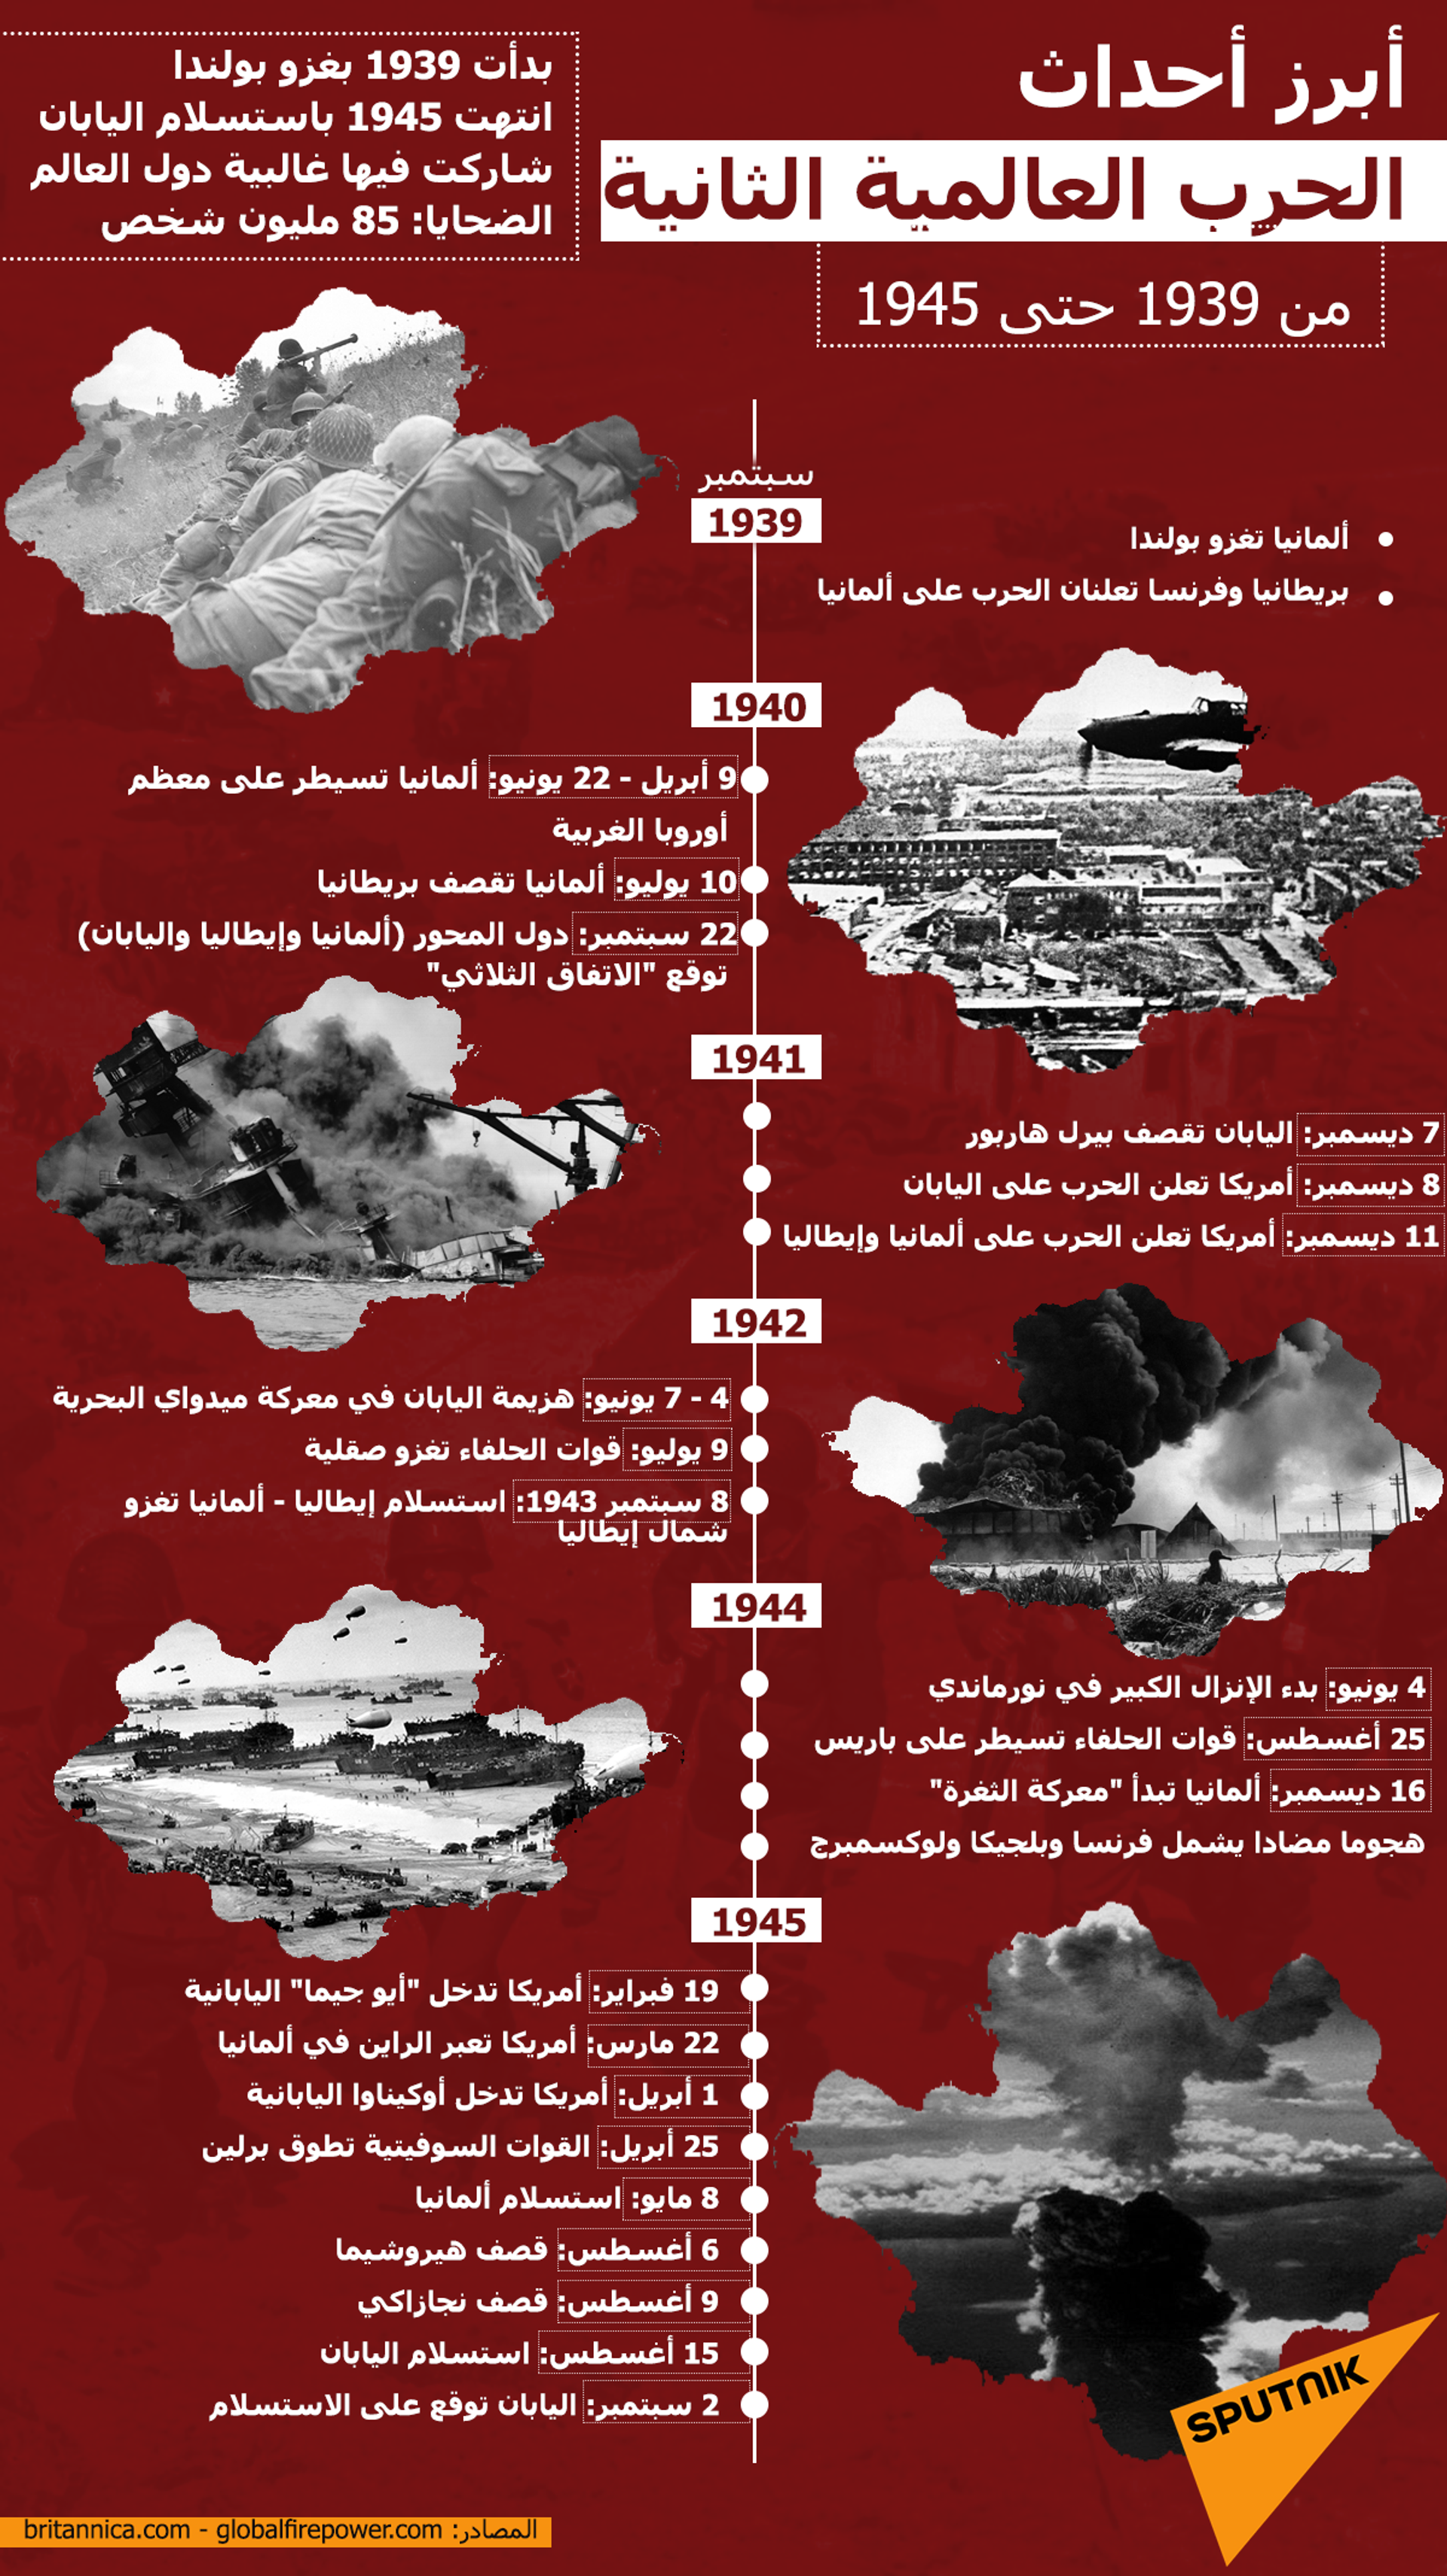 أبرز أحداث الحرب العالمية الثانية من 1939 حتى 1945 - سبوتنيك عربي, 1920, 23.11.2021